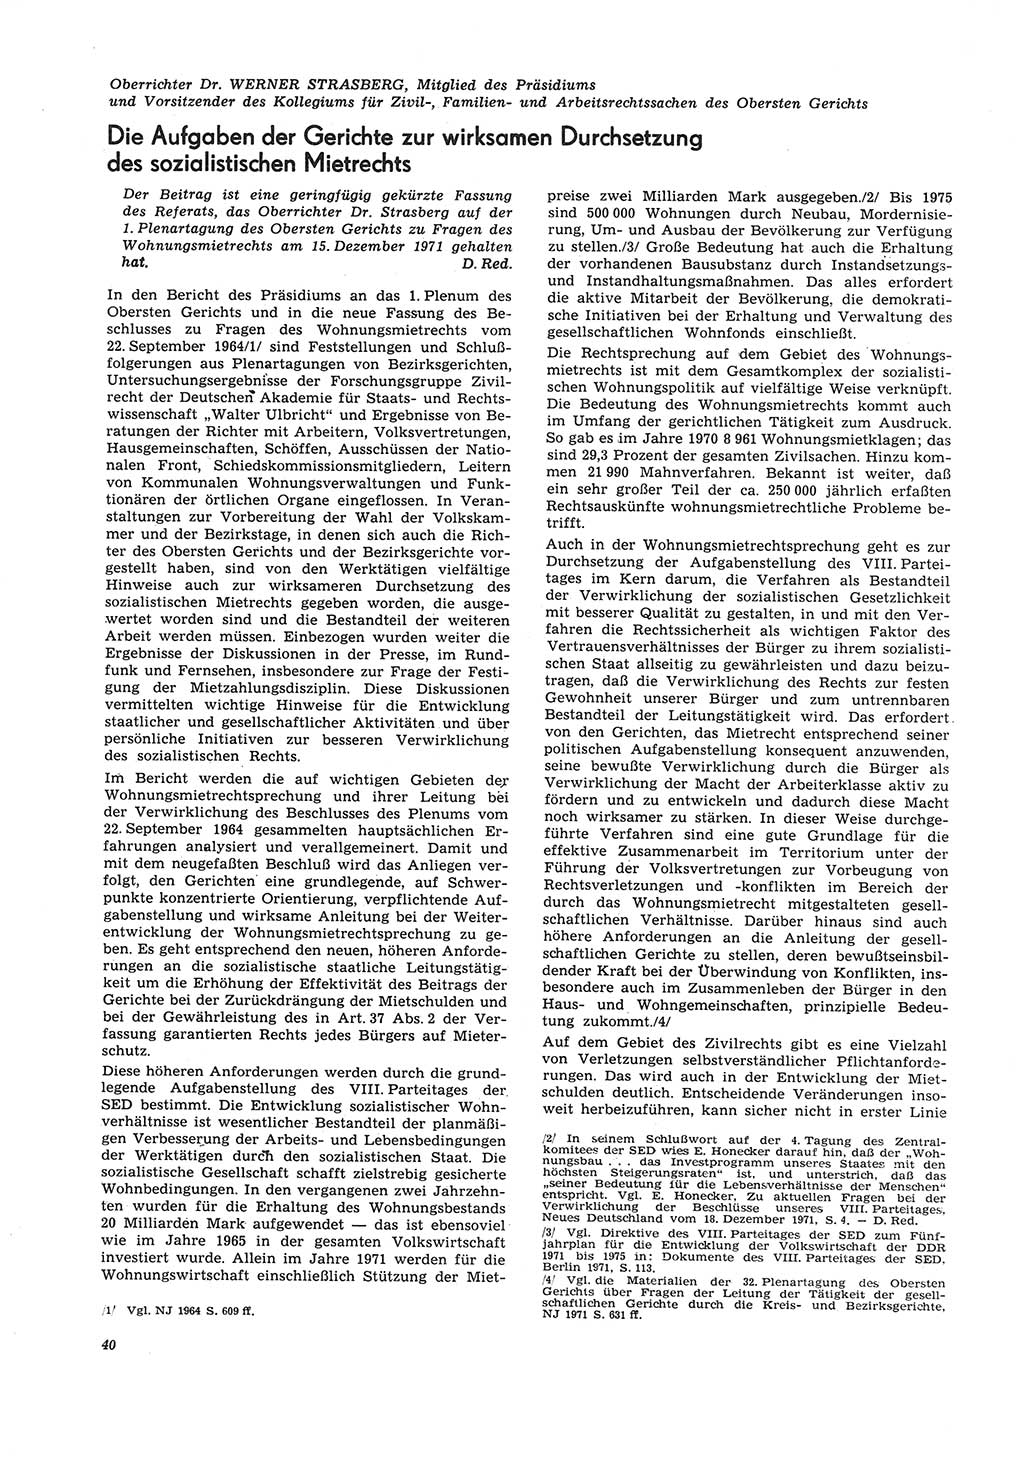 Neue Justiz (NJ), Zeitschrift für Recht und Rechtswissenschaft [Deutsche Demokratische Republik (DDR)], 26. Jahrgang 1972, Seite 40 (NJ DDR 1972, S. 40)